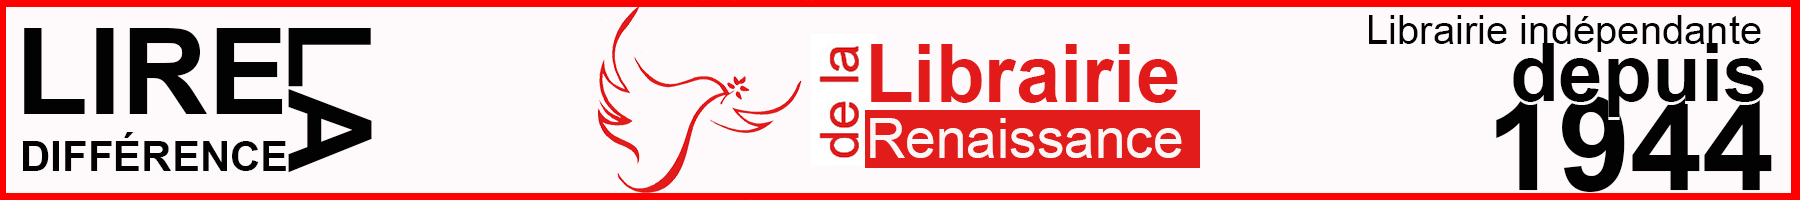 Librairie de la Renaissance